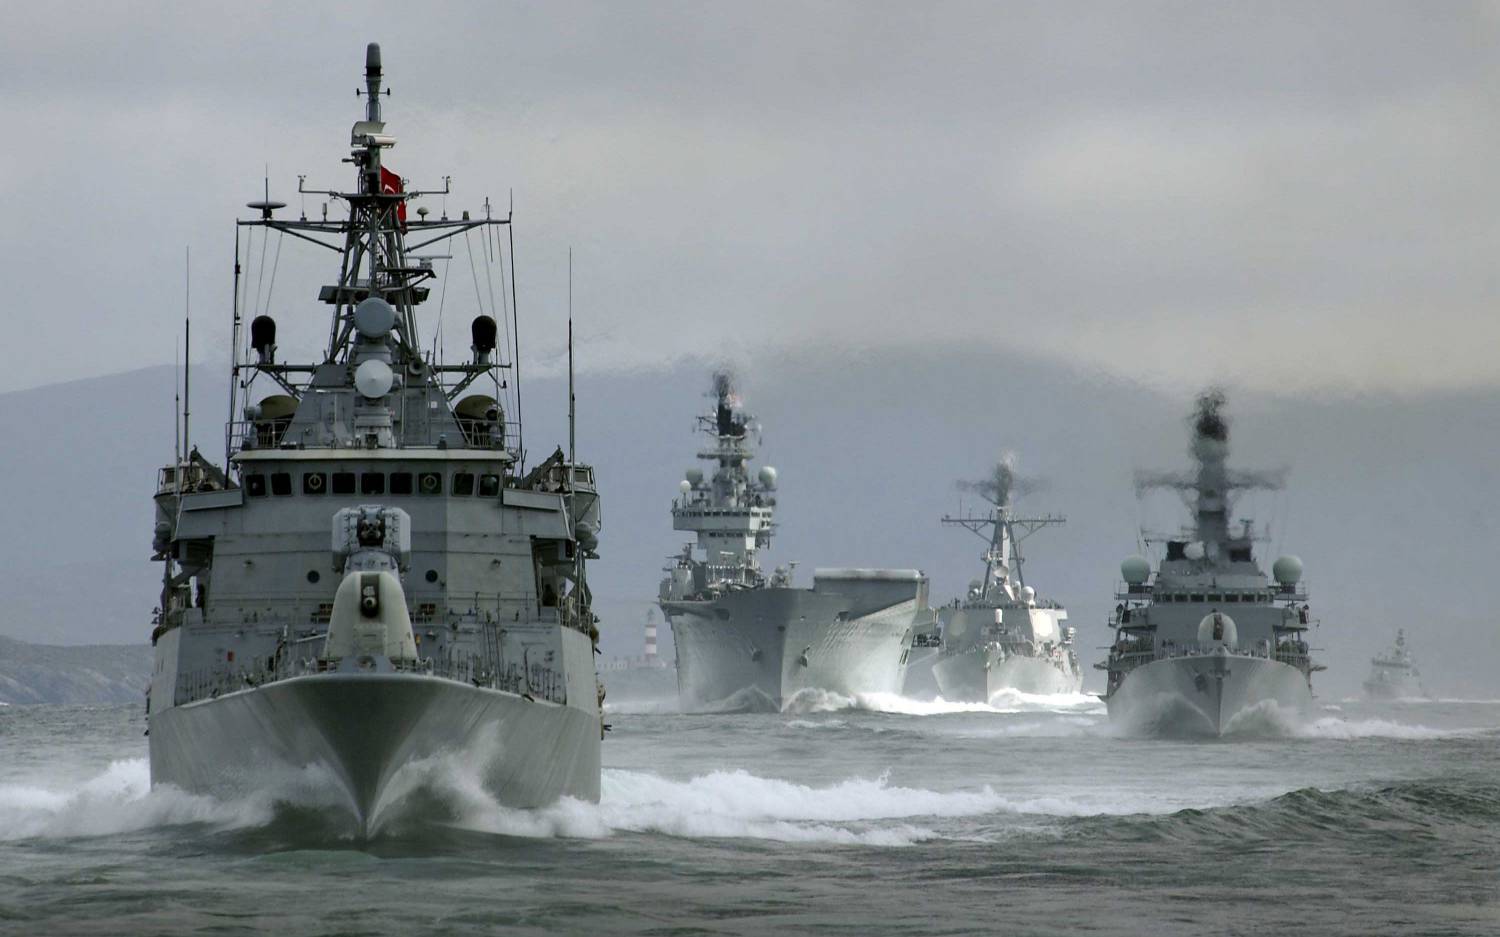 Мощный сигнал поддержки Украины от НАТО: в Одессу направляются военные корабли